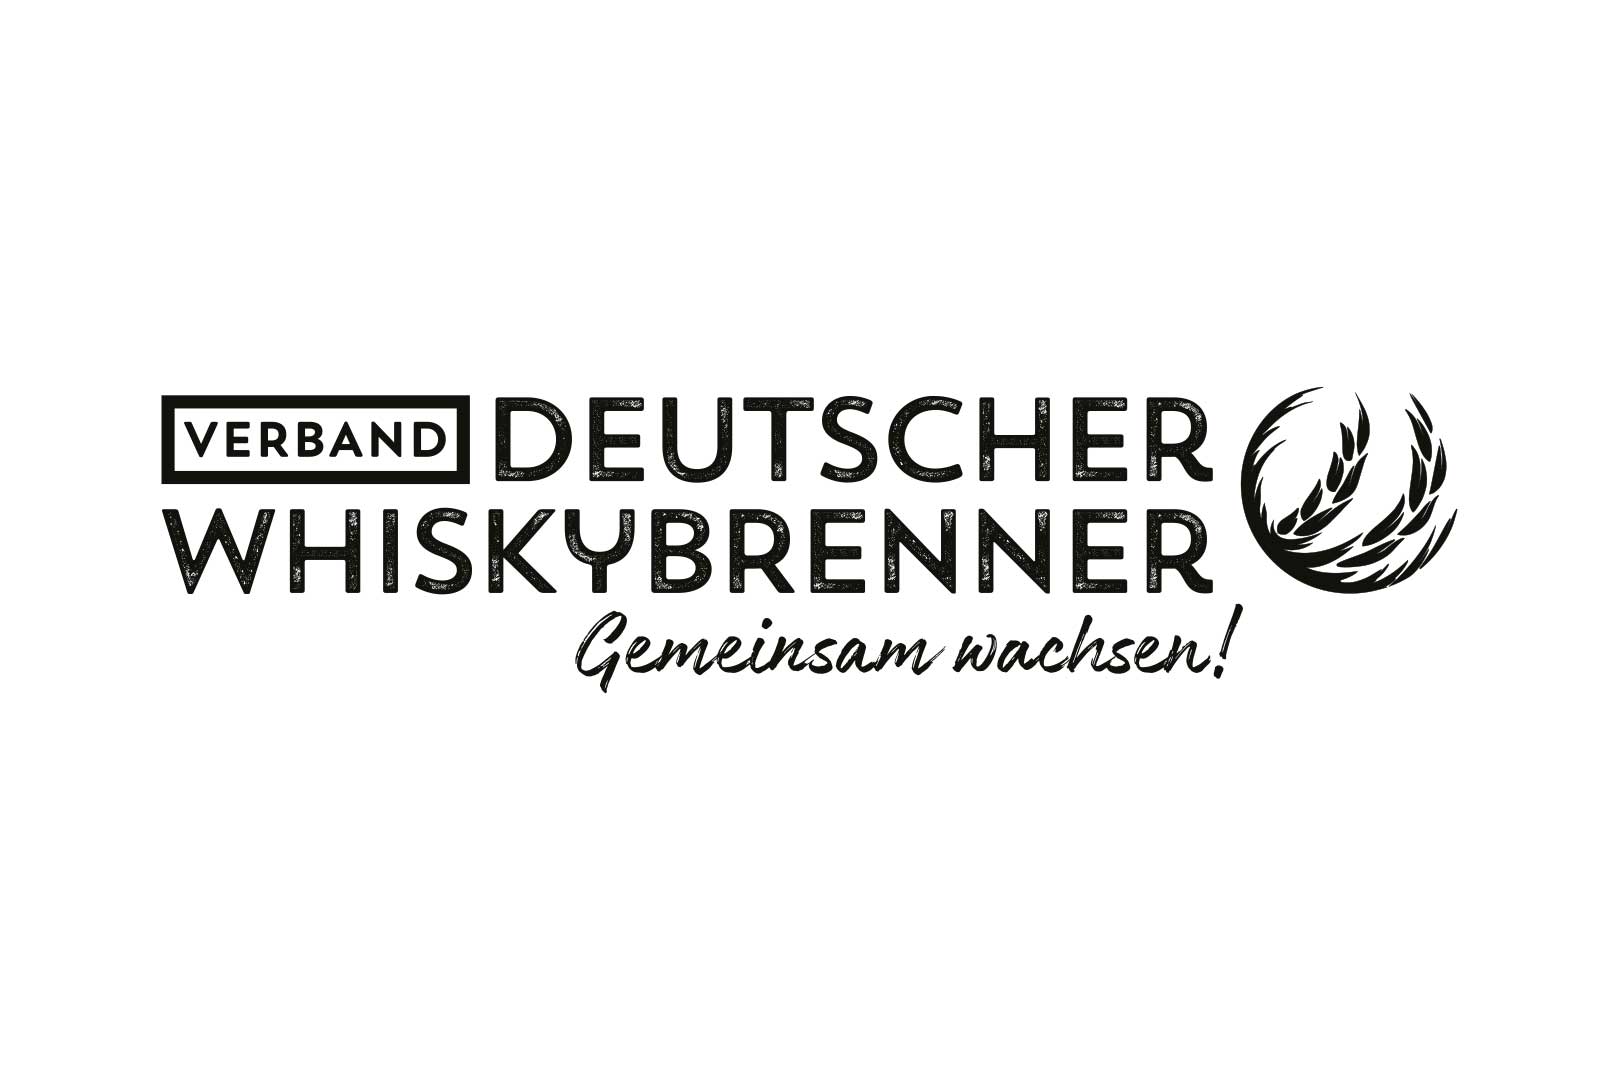 Verband Deutscher Whiskybrenner e.V.